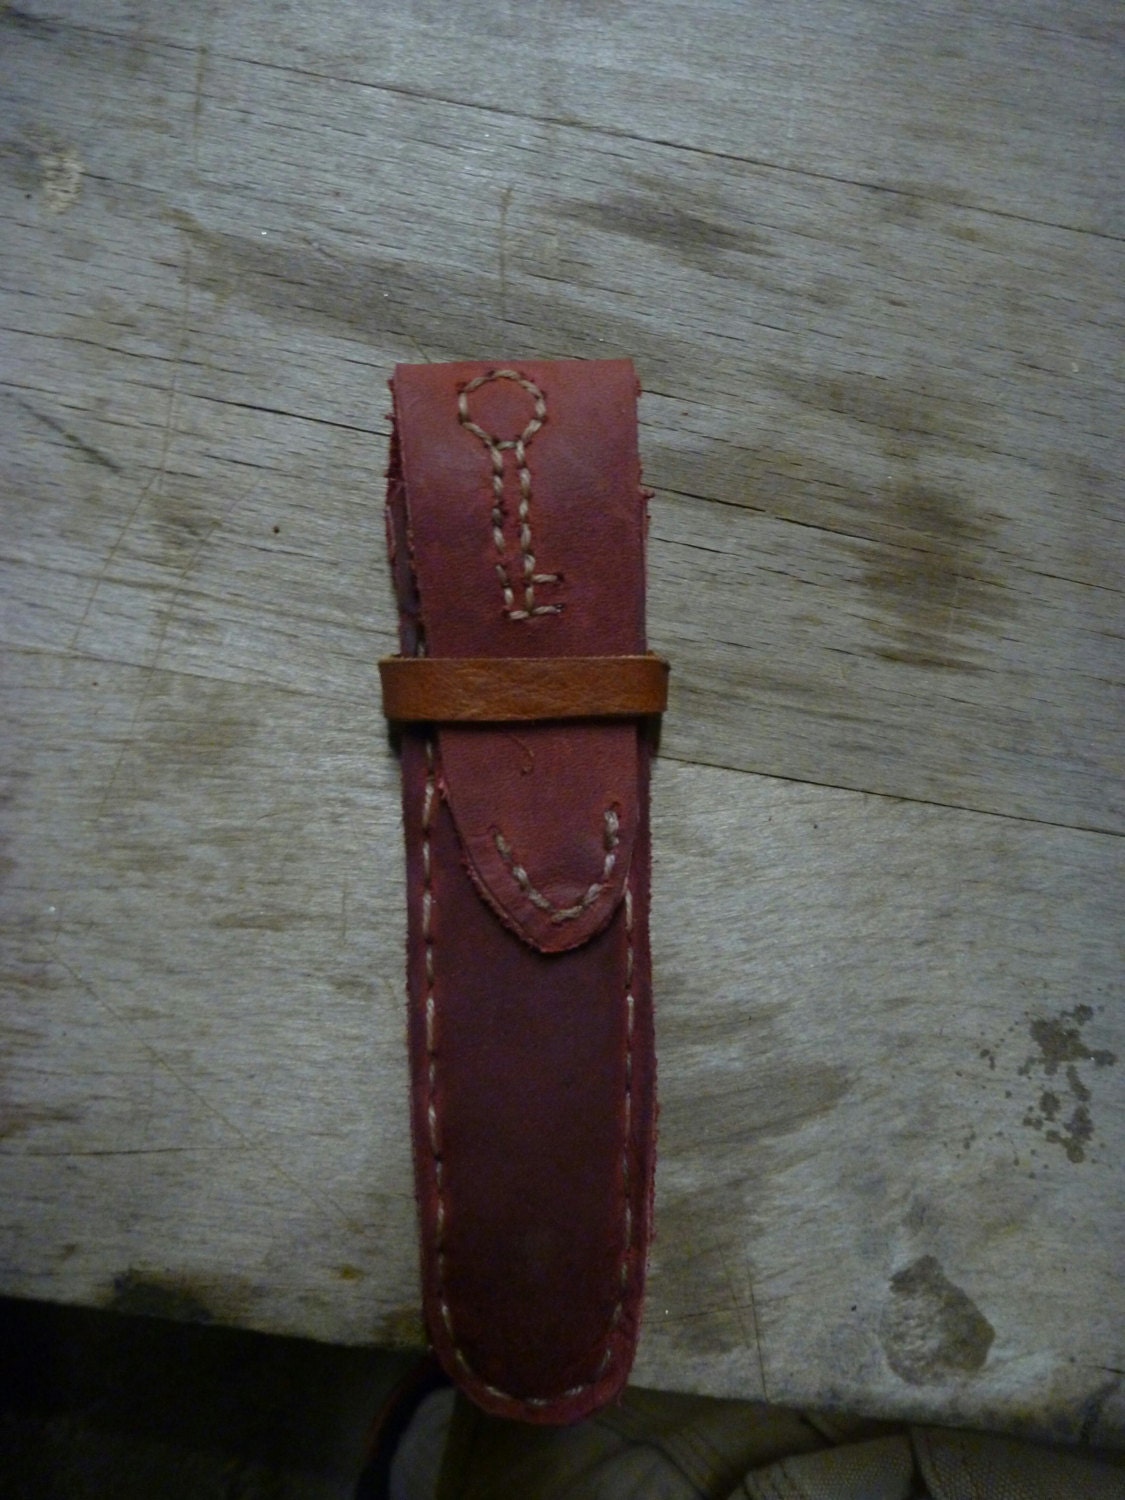 locksmith car keyshape lockpick kit with leather case